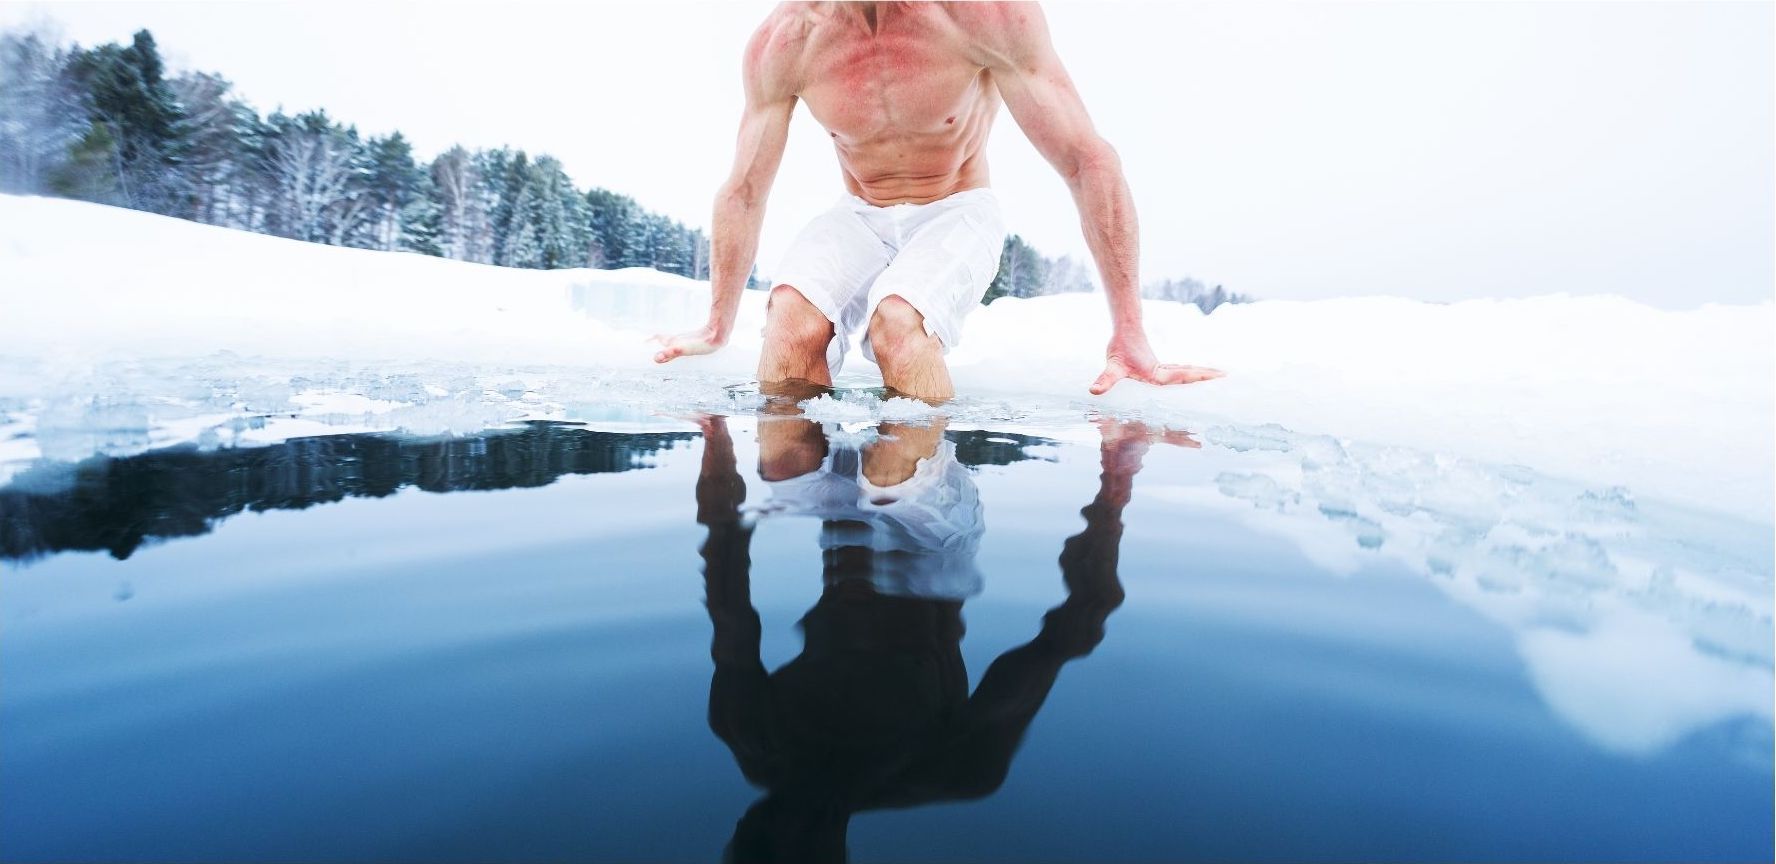 Baños en agua fría para recuperar la musculatura: ¿sí o no?